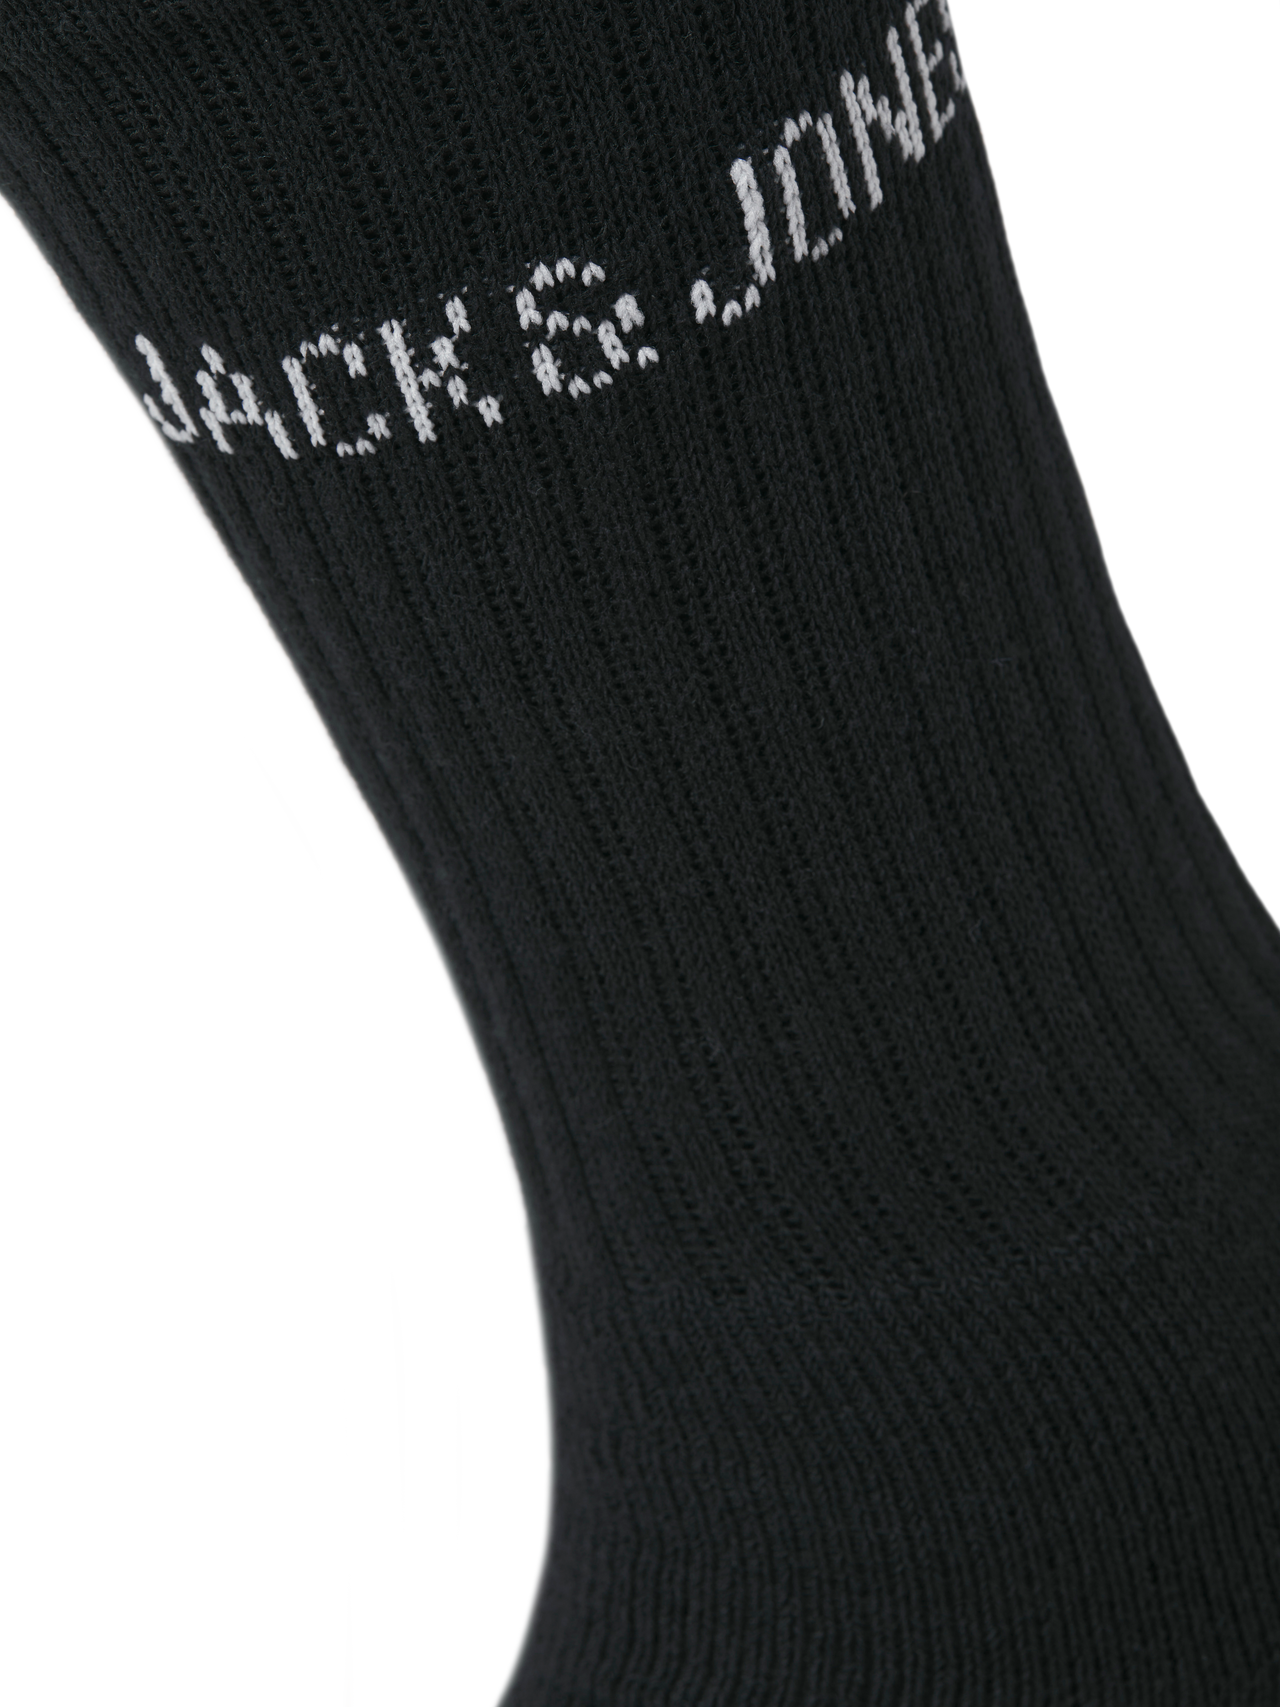 Jack & Jones 5-συσκευασία Κάλτσες -Black - 12266536